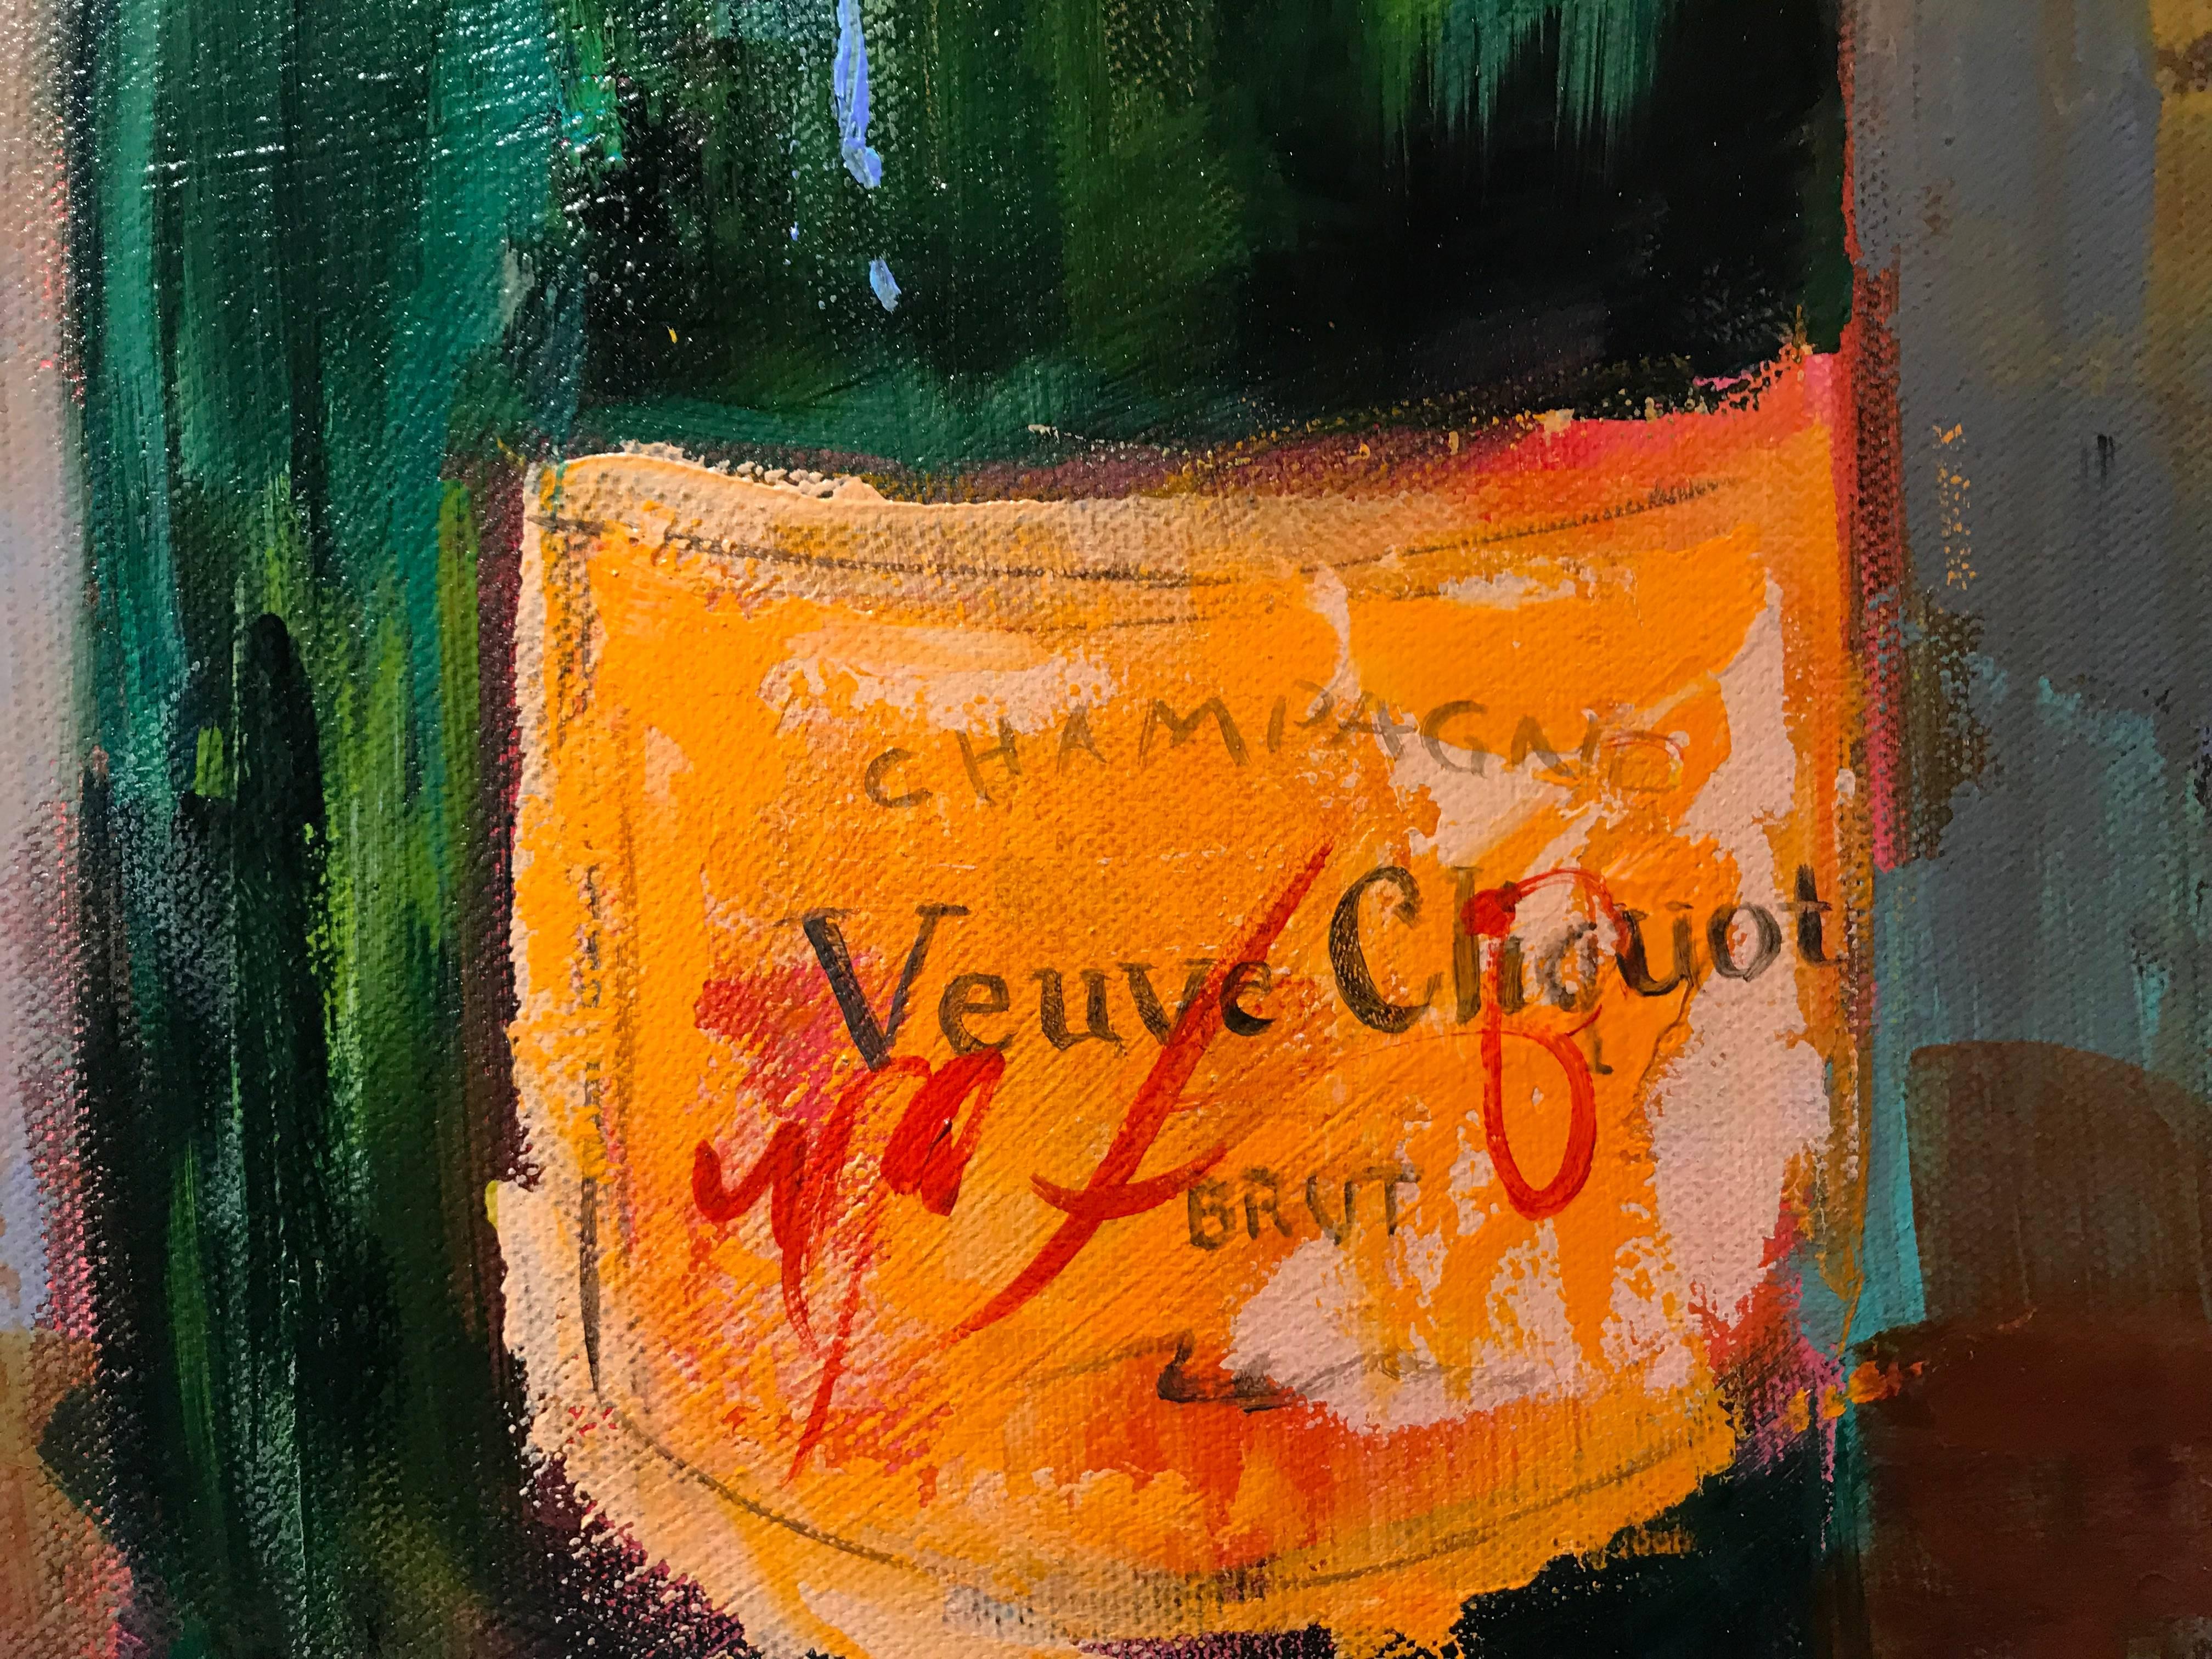 painted veuve bottle